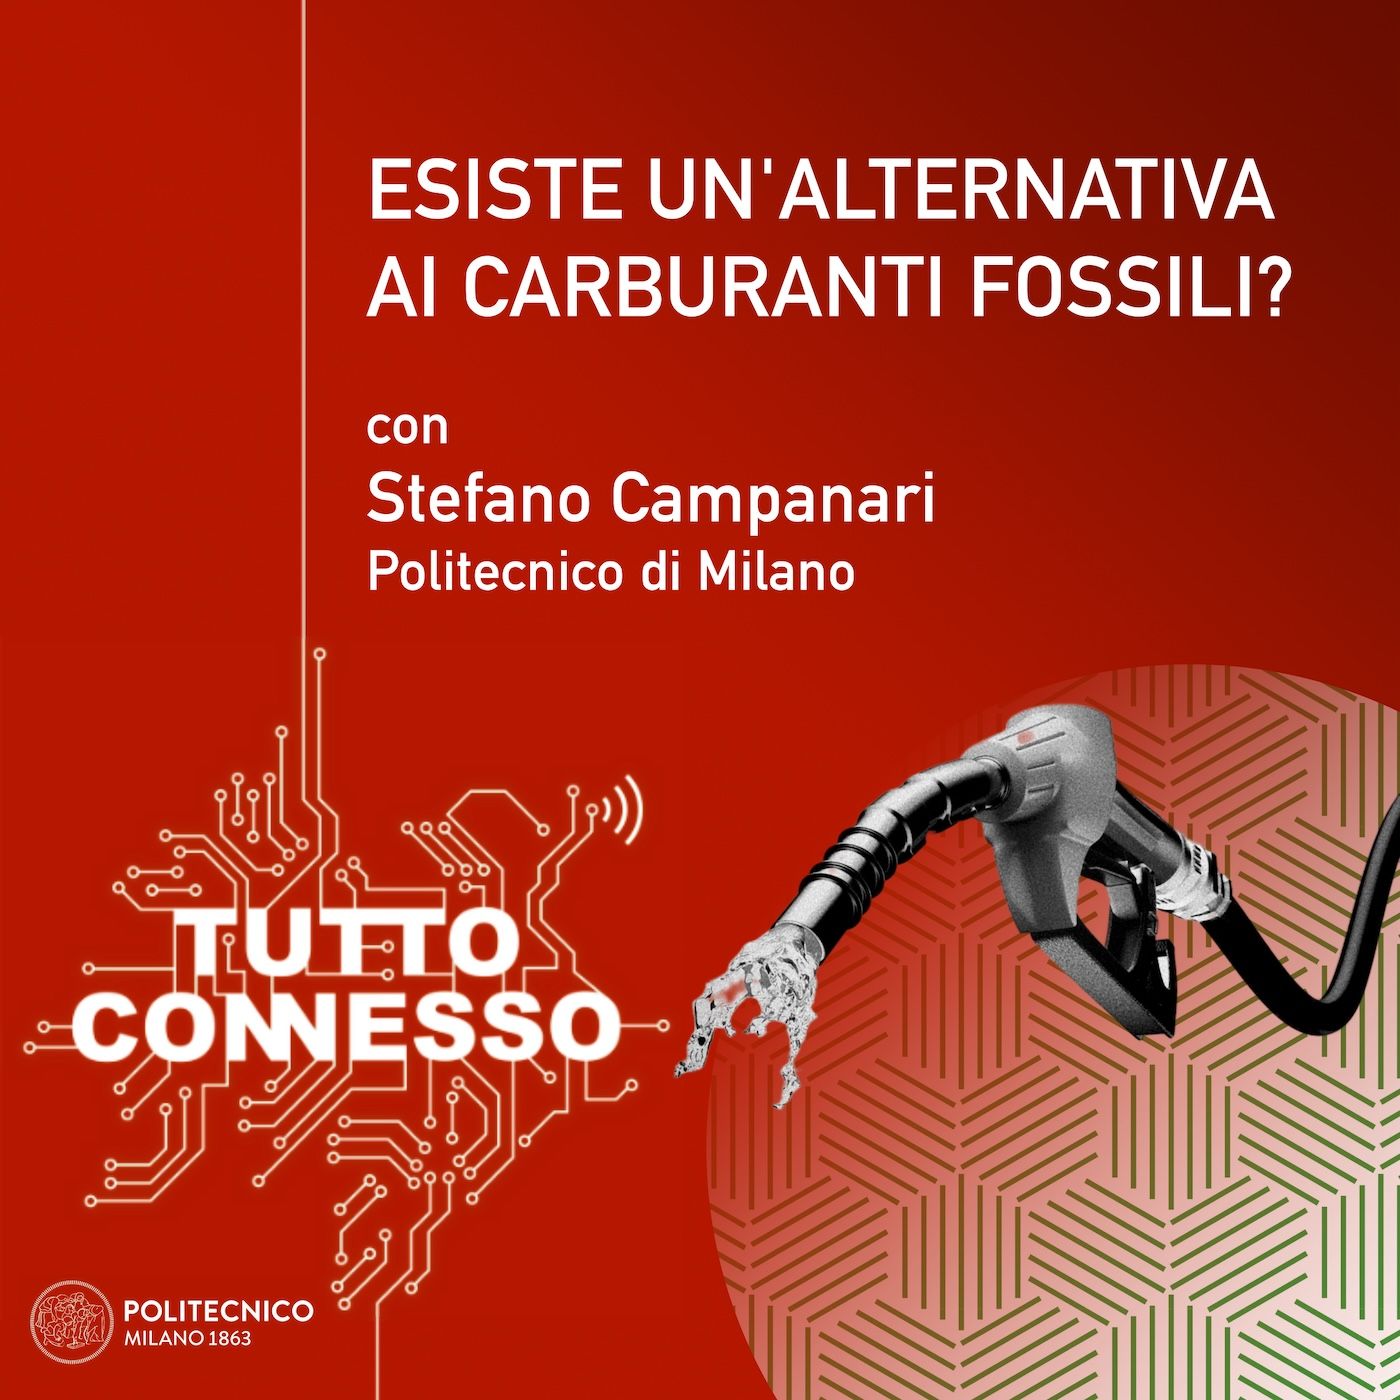 05: Esiste un'alternativa ai carburanti fossili? Con Stefano Campanari